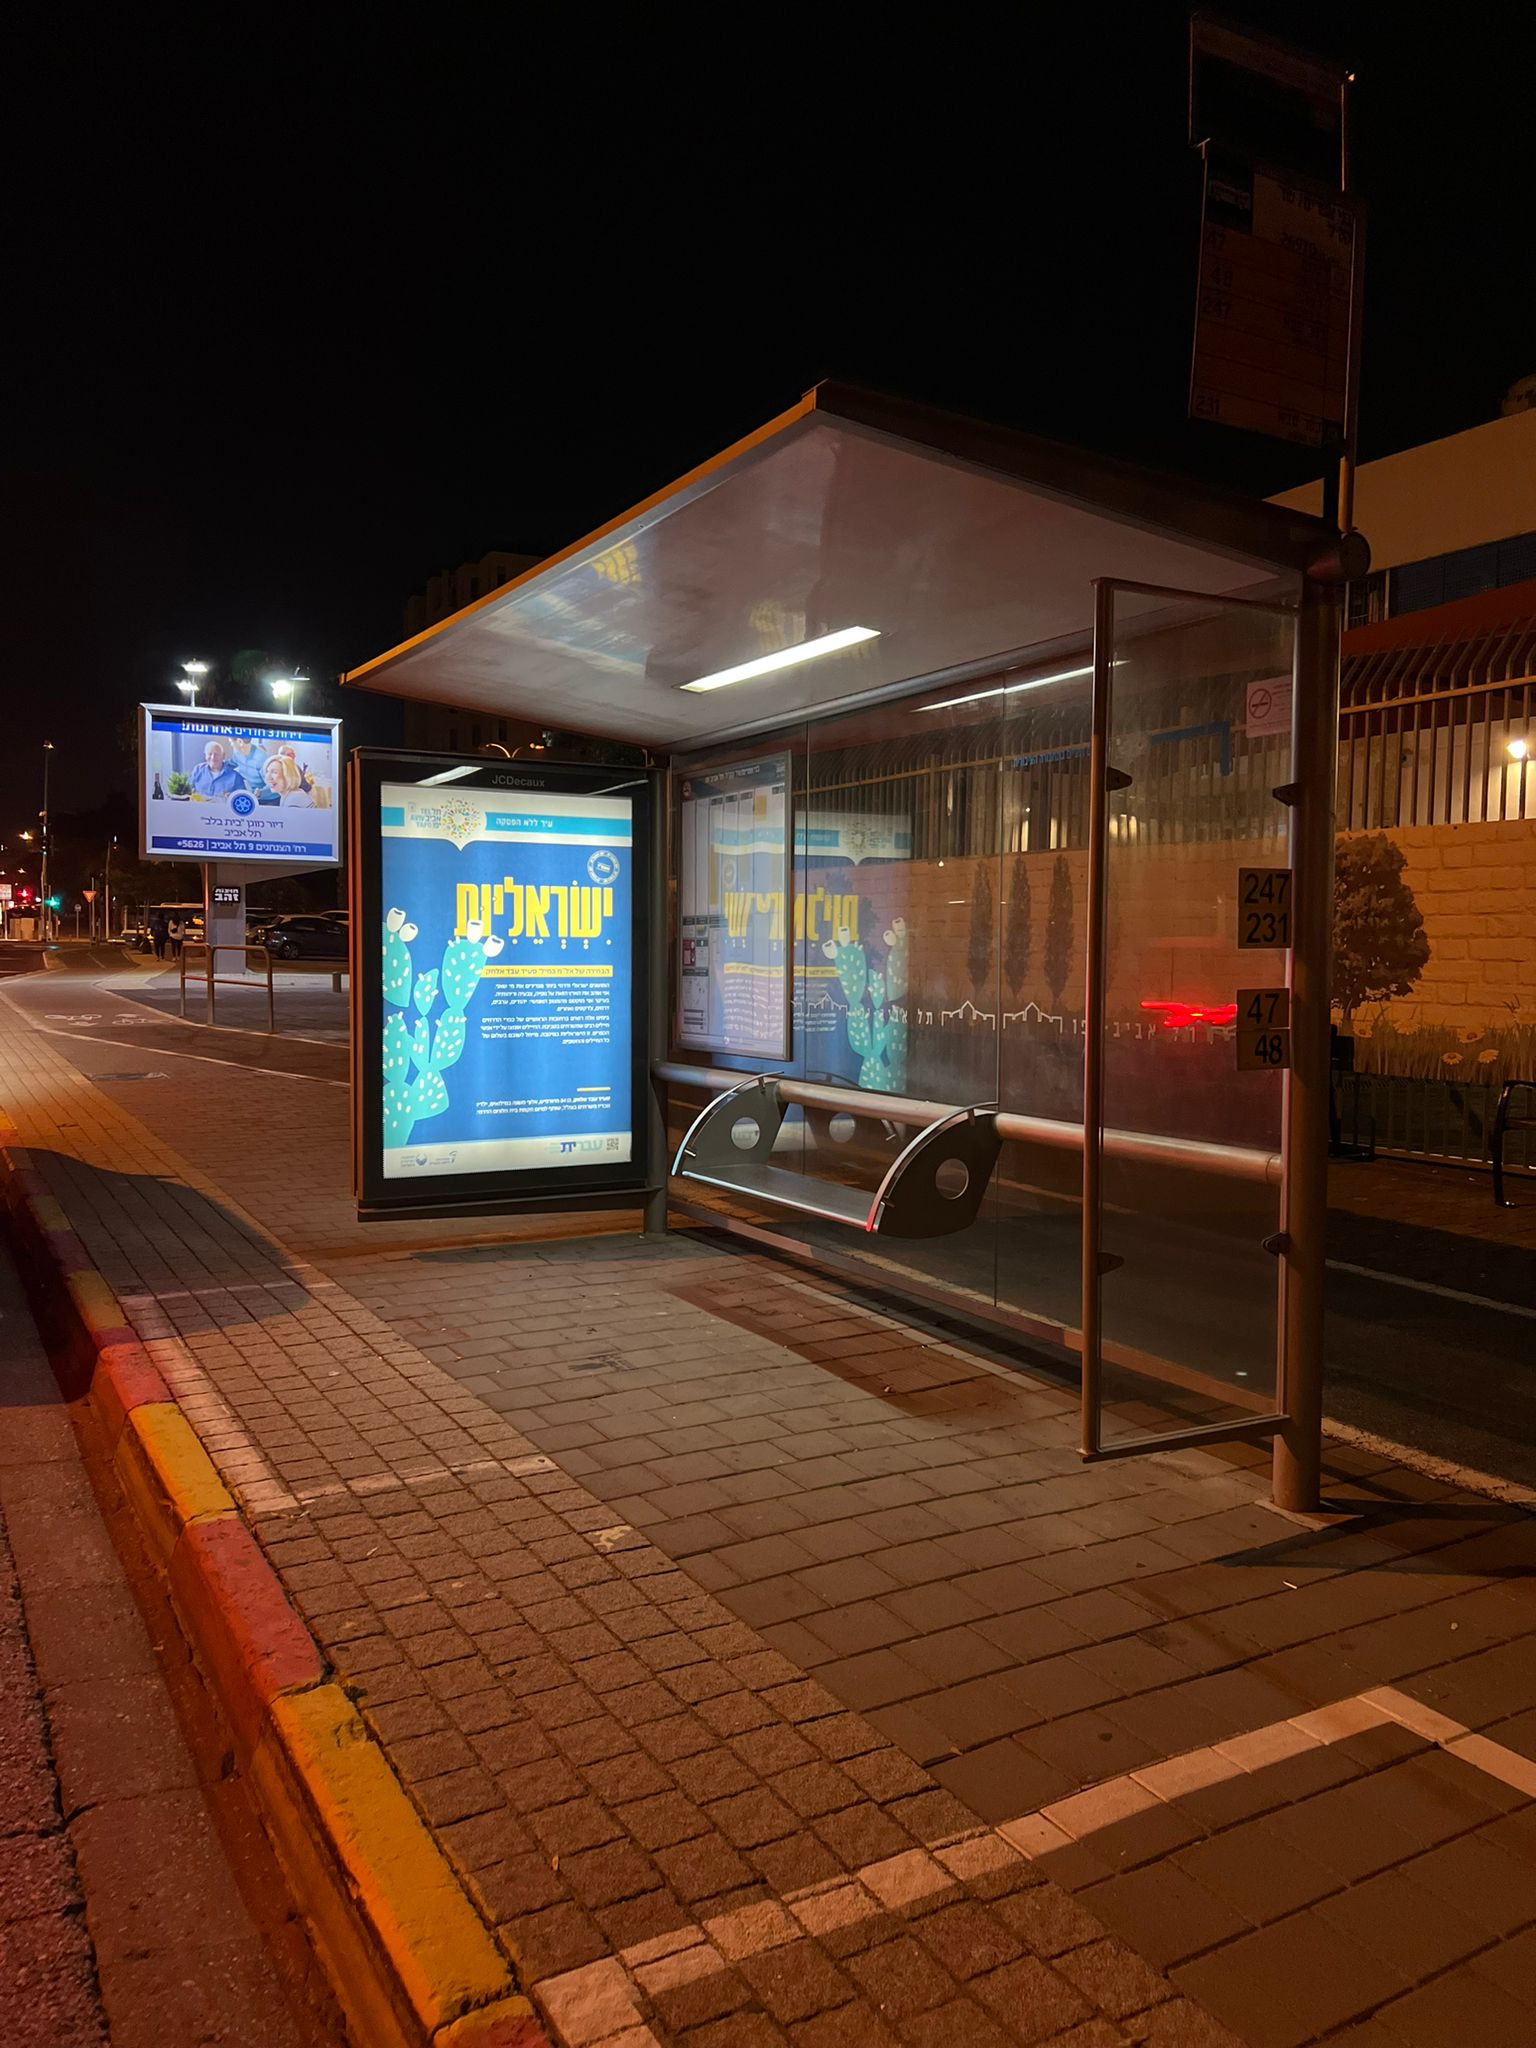 תחנת אוטובוס בתל אביב